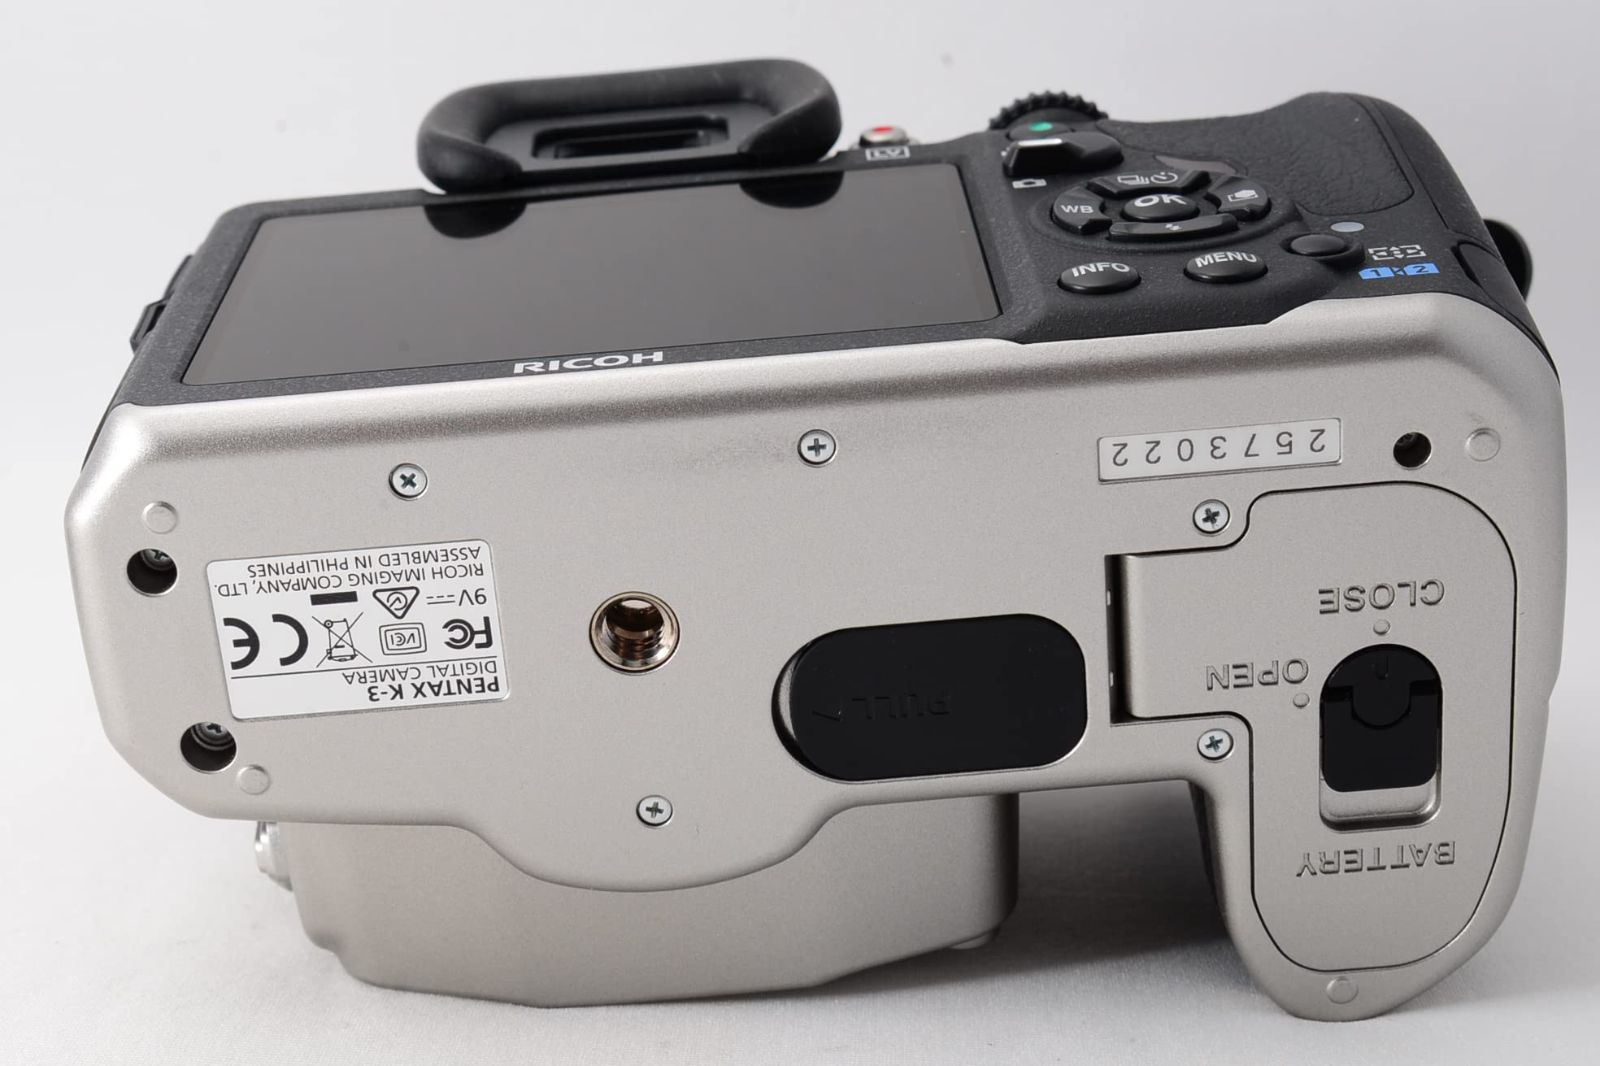 シャッター回数僅か248☆ PENTAX デジタル一眼レフカメラ K-3 プレミアムシルバーエディション 15565 グッチーカメラ メルカリ